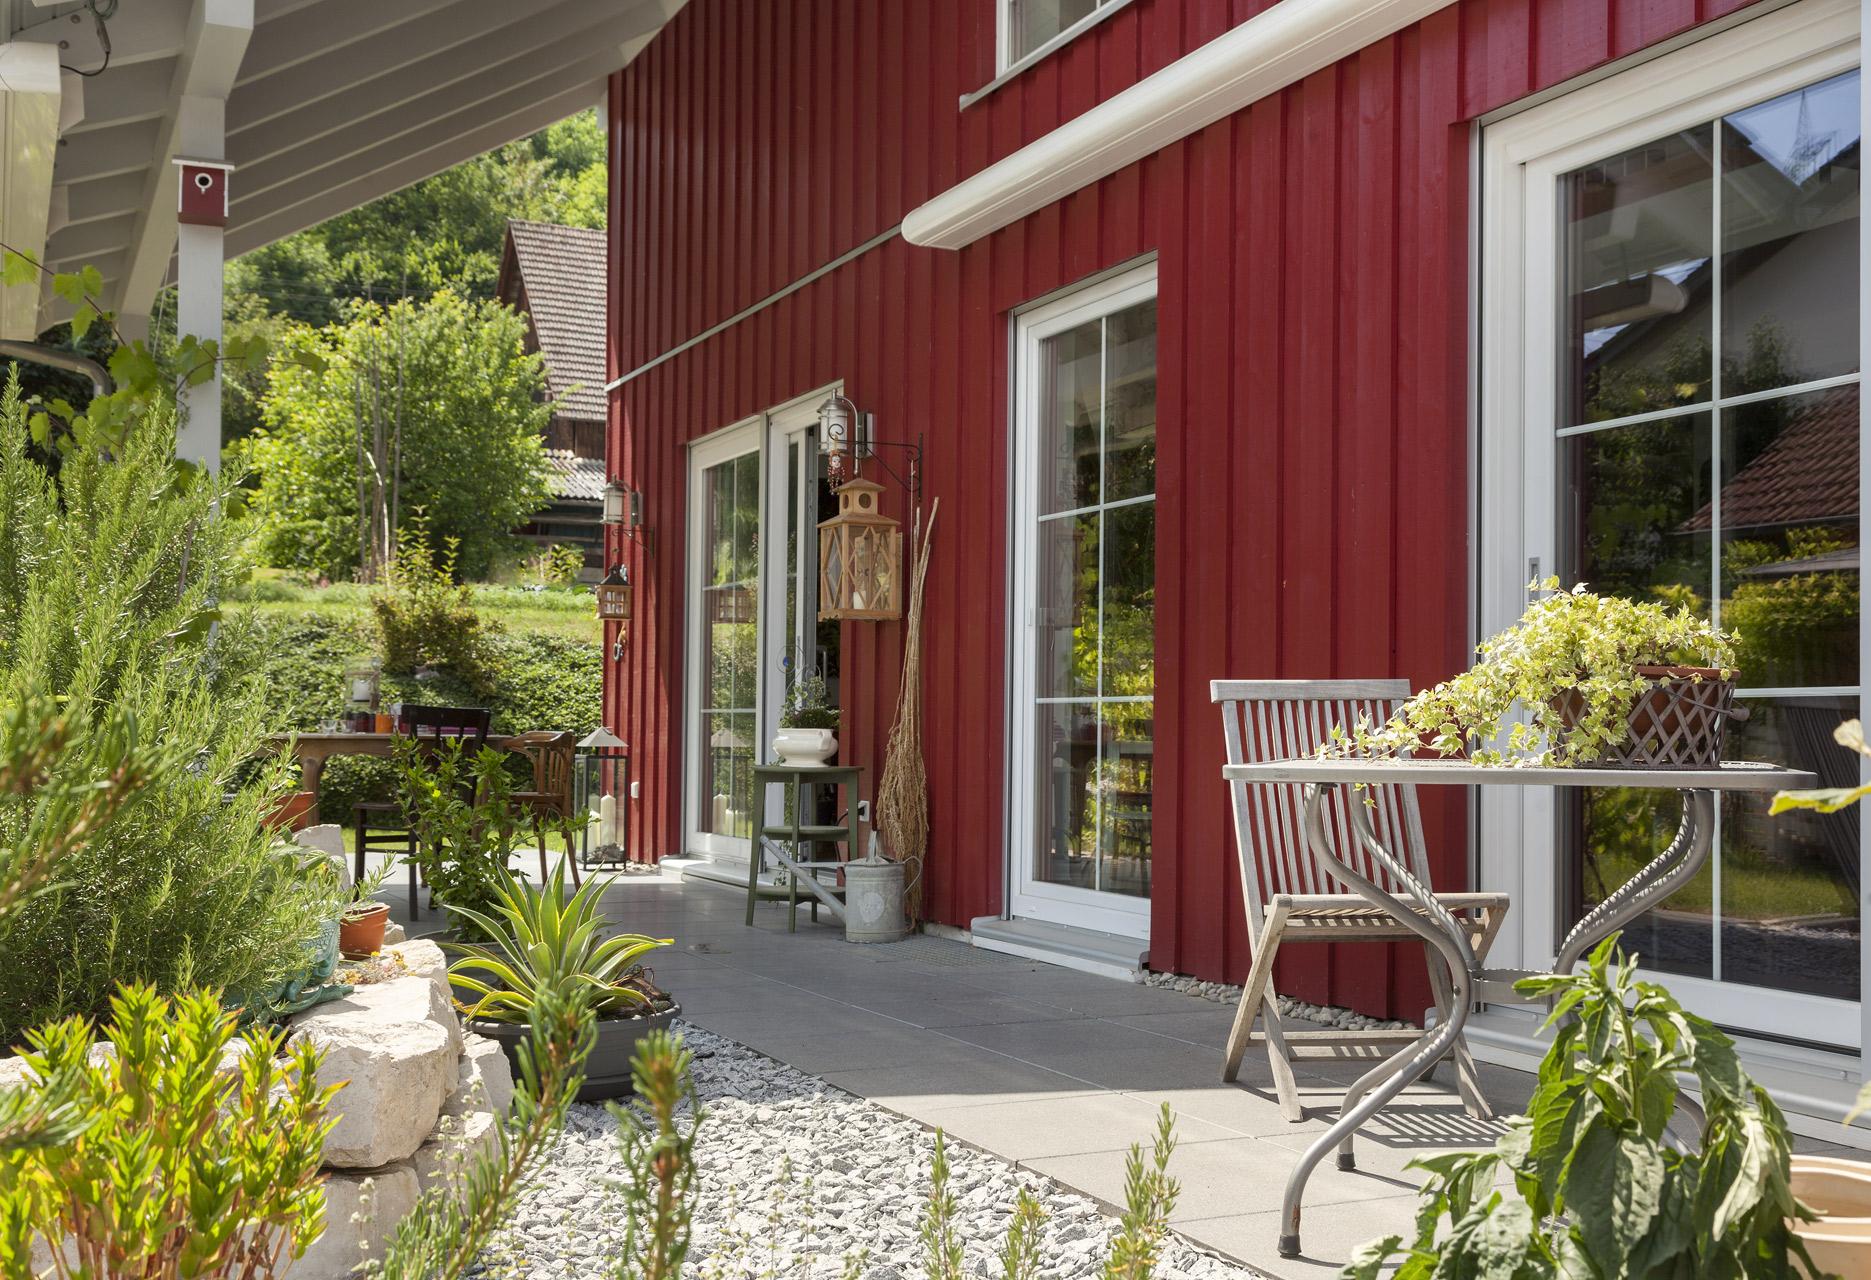 Casa prefabbricata con rivestimento in legno rosso e terrazzo dal design accattivante